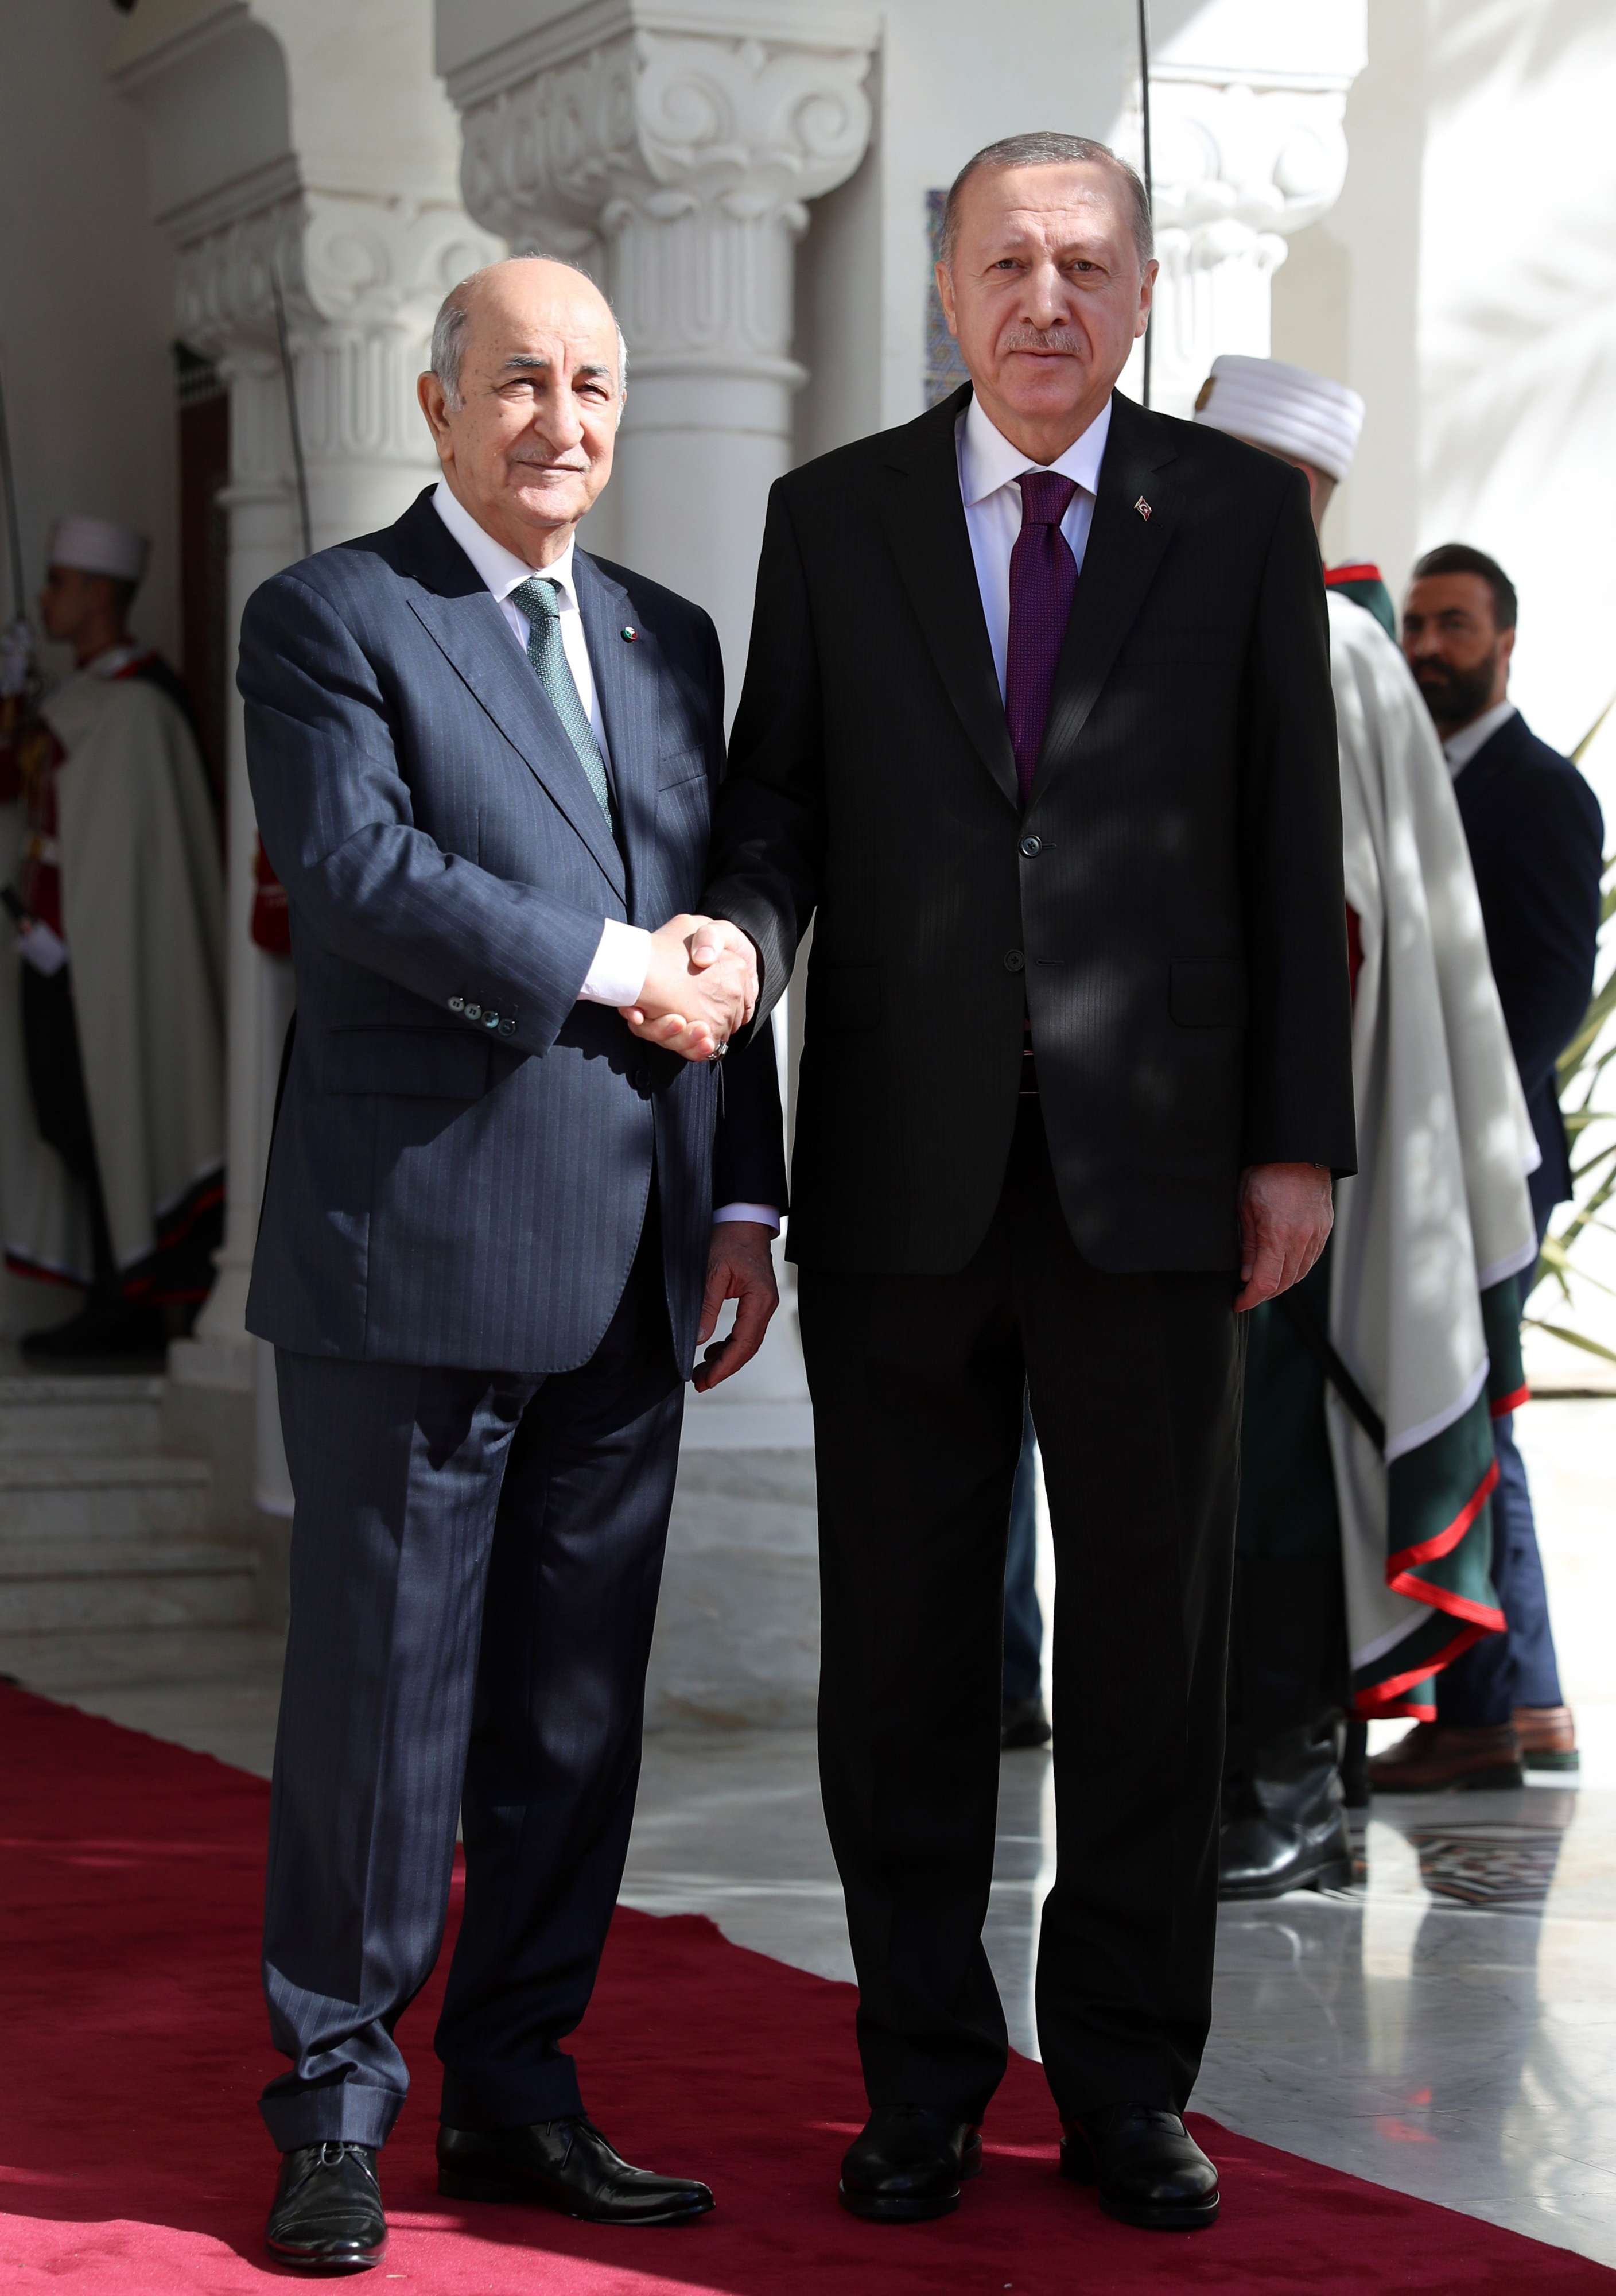 حرص الجزائر على علاقات قوية مع تركيا يضعف وساطتها في ليبيا